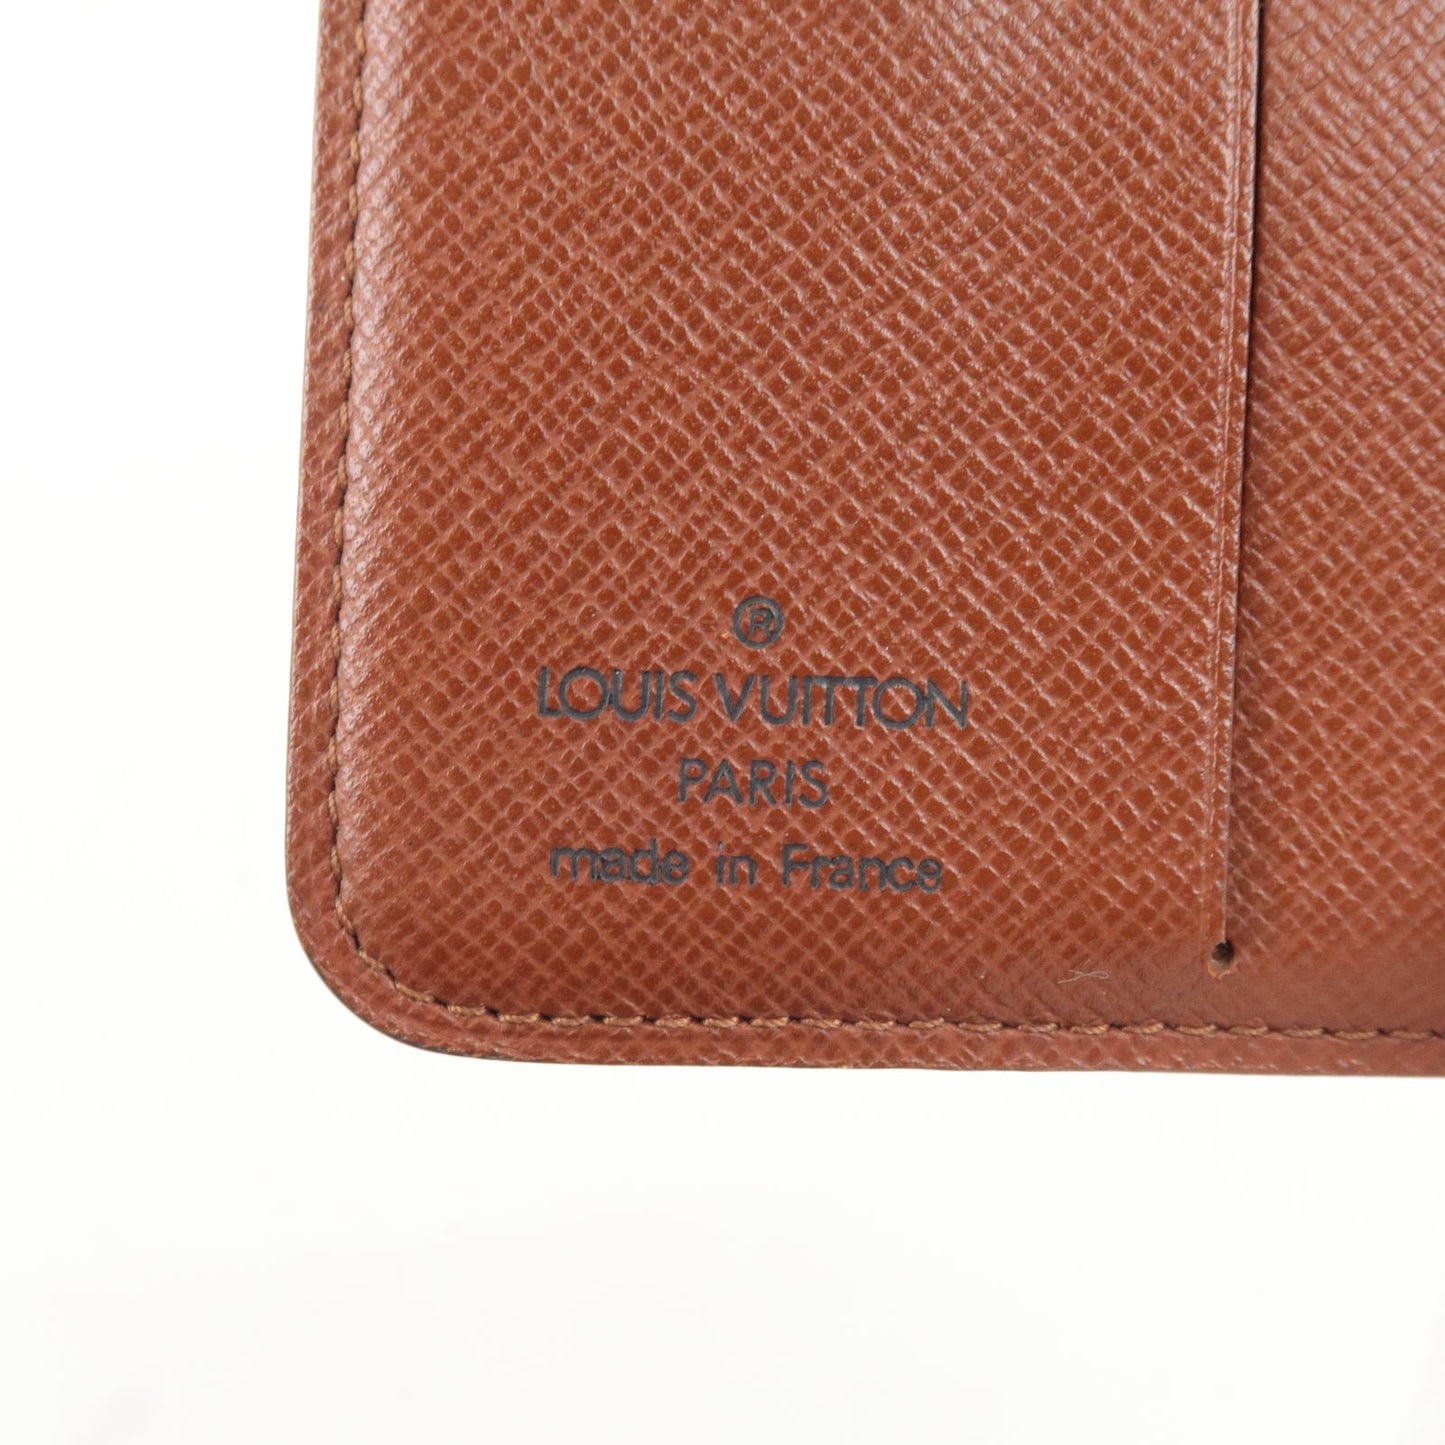 Auth LOUIS VUITTON Compact Zipper Wallet M61667 Monogram CA0013